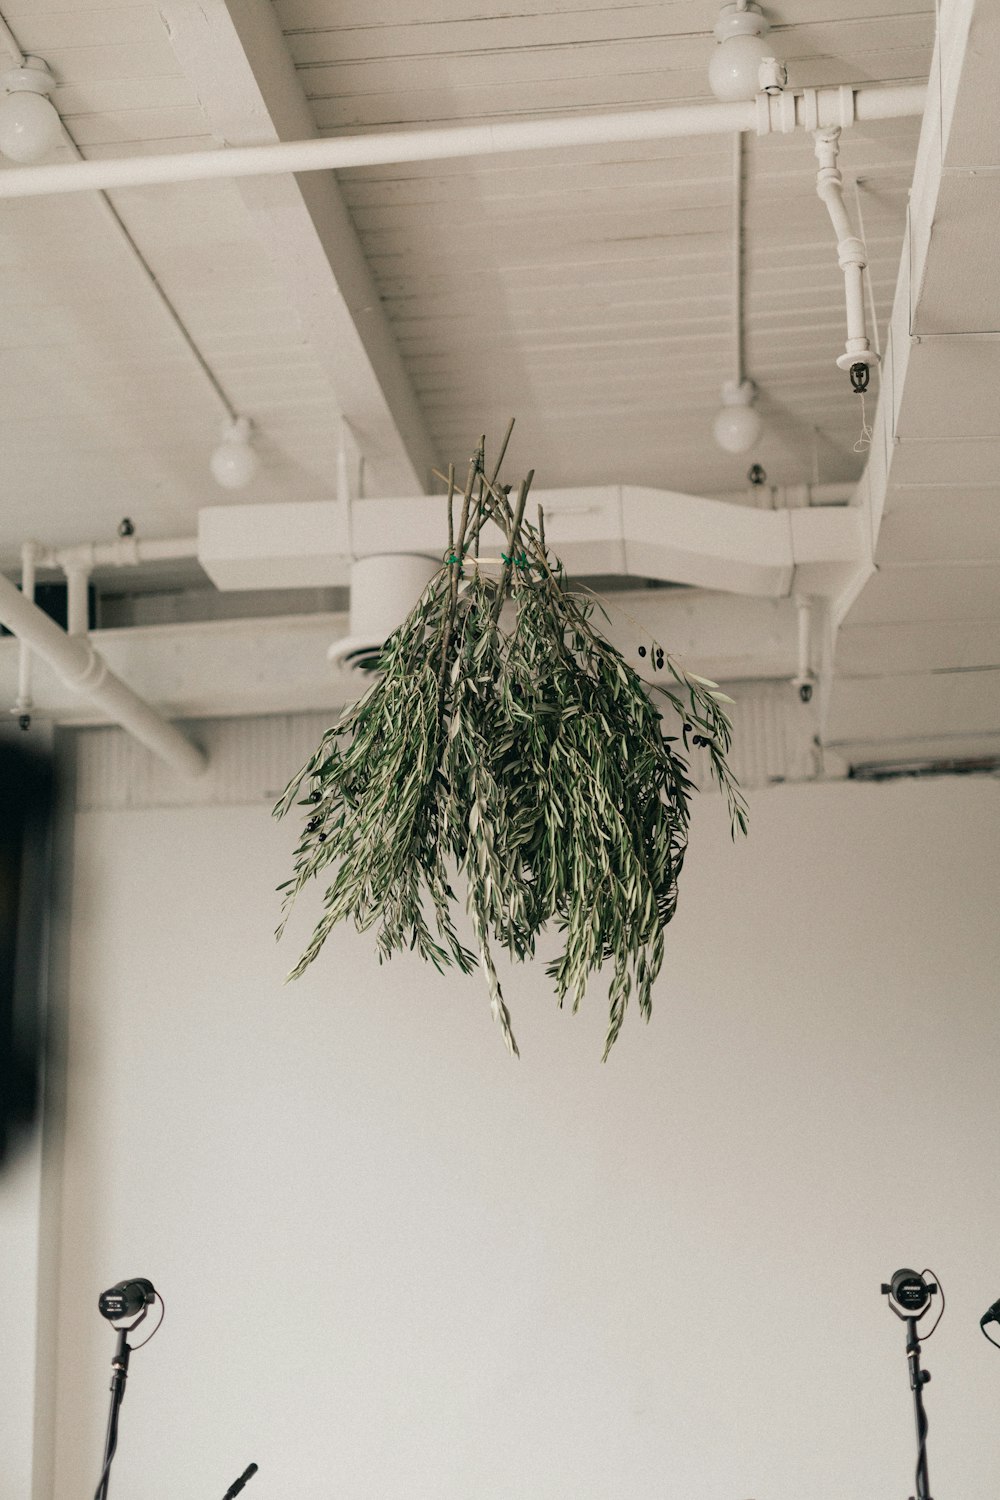 방의 천장에 매달린 식물